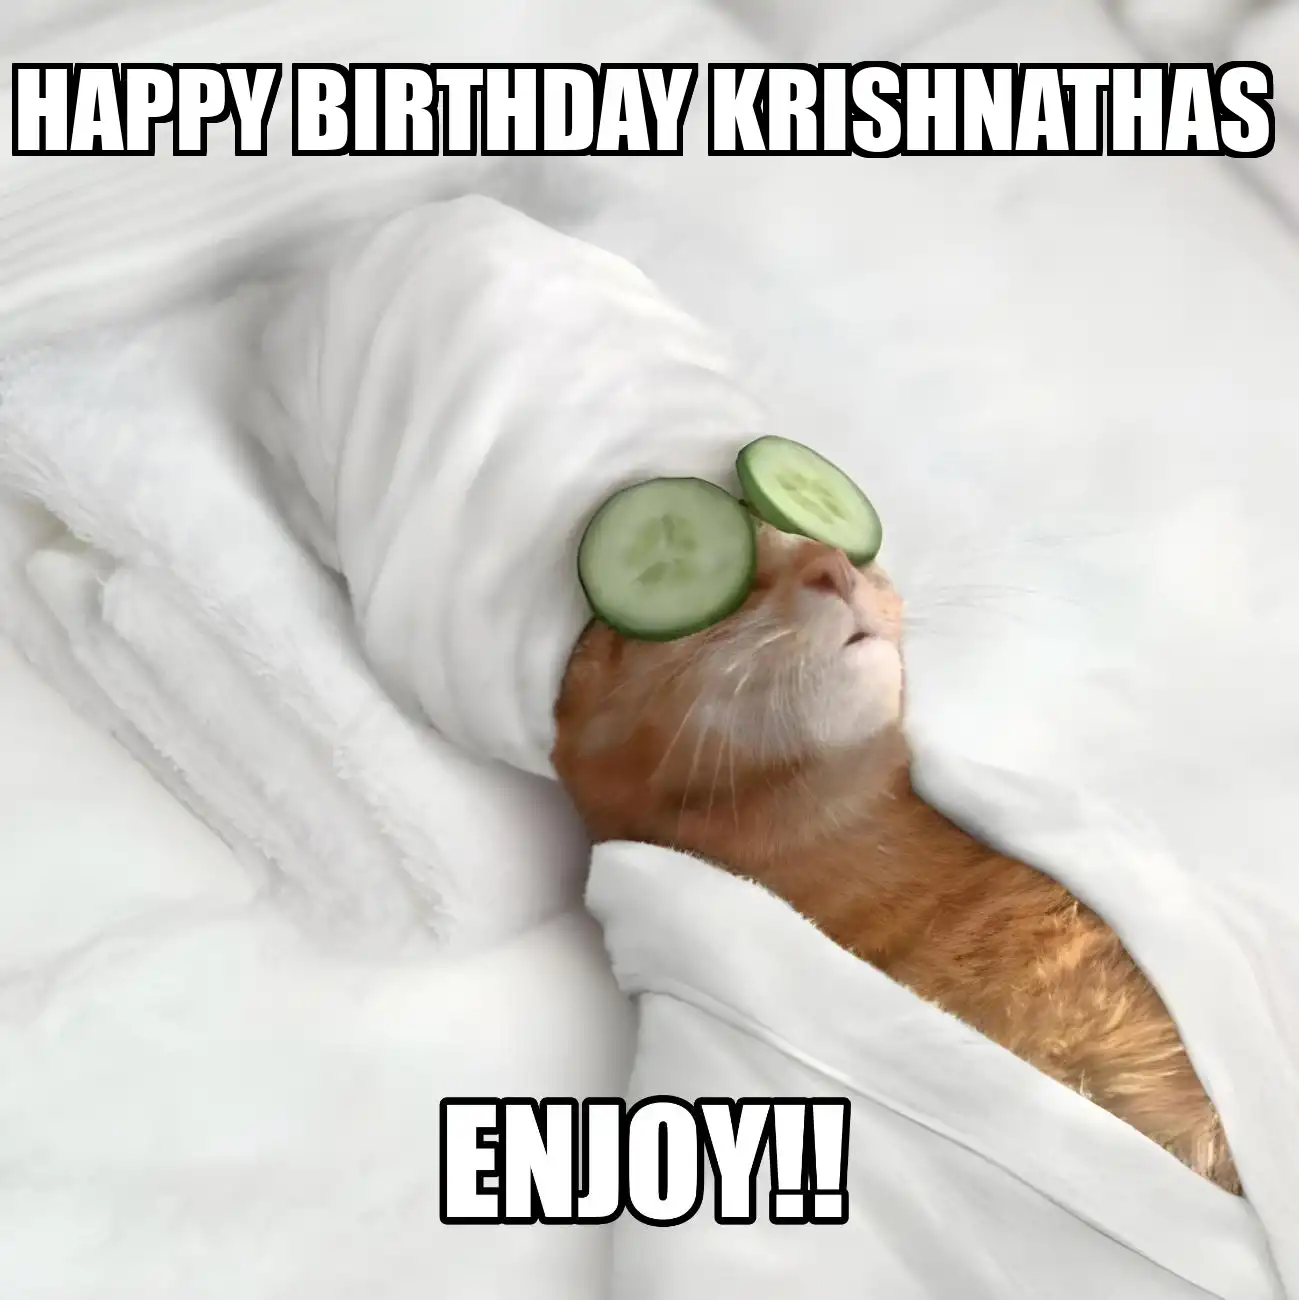 Happy Birthday Krishnathas Enjoy Cat Meme